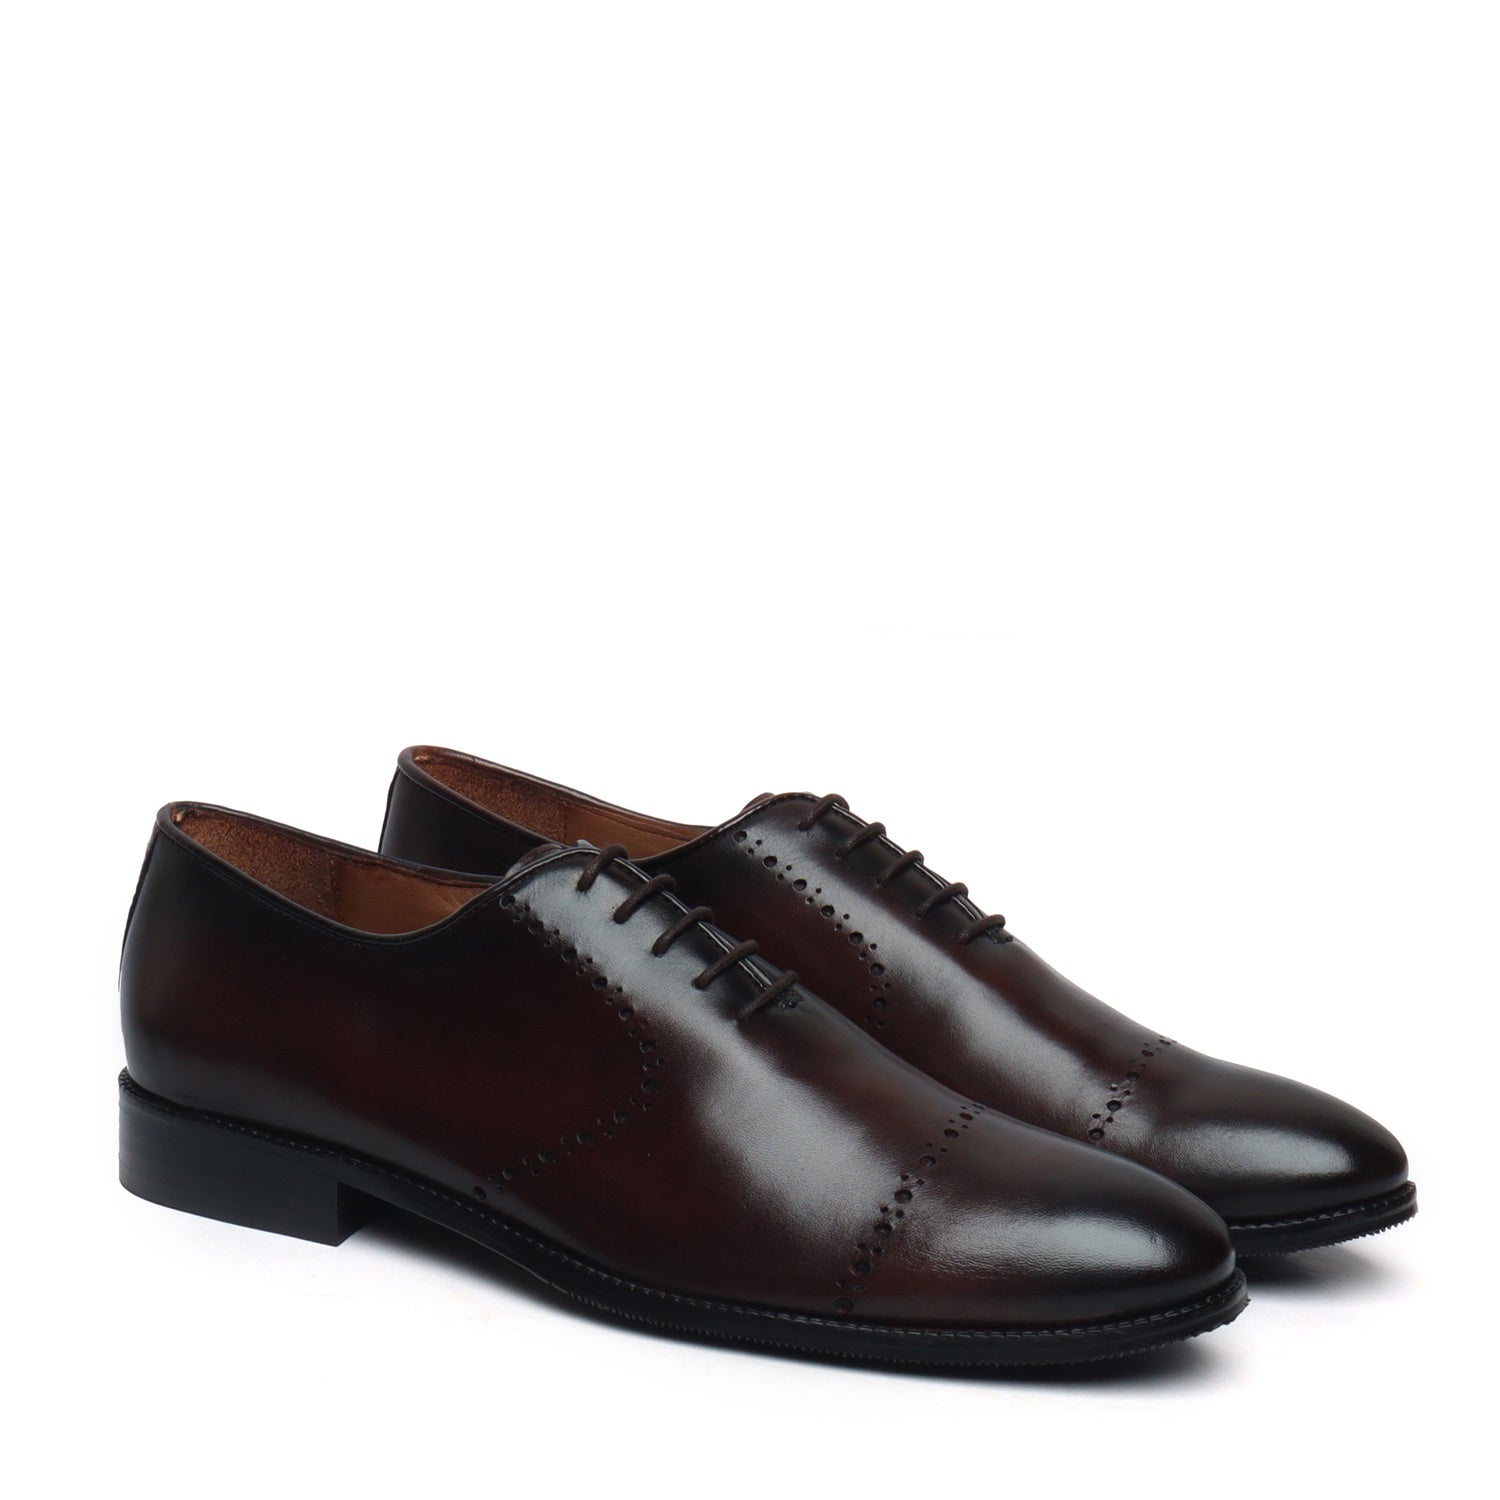 Brown Burnished Leather Quarter Brogue Oxford Formal Shoes By Brune & Bareskin